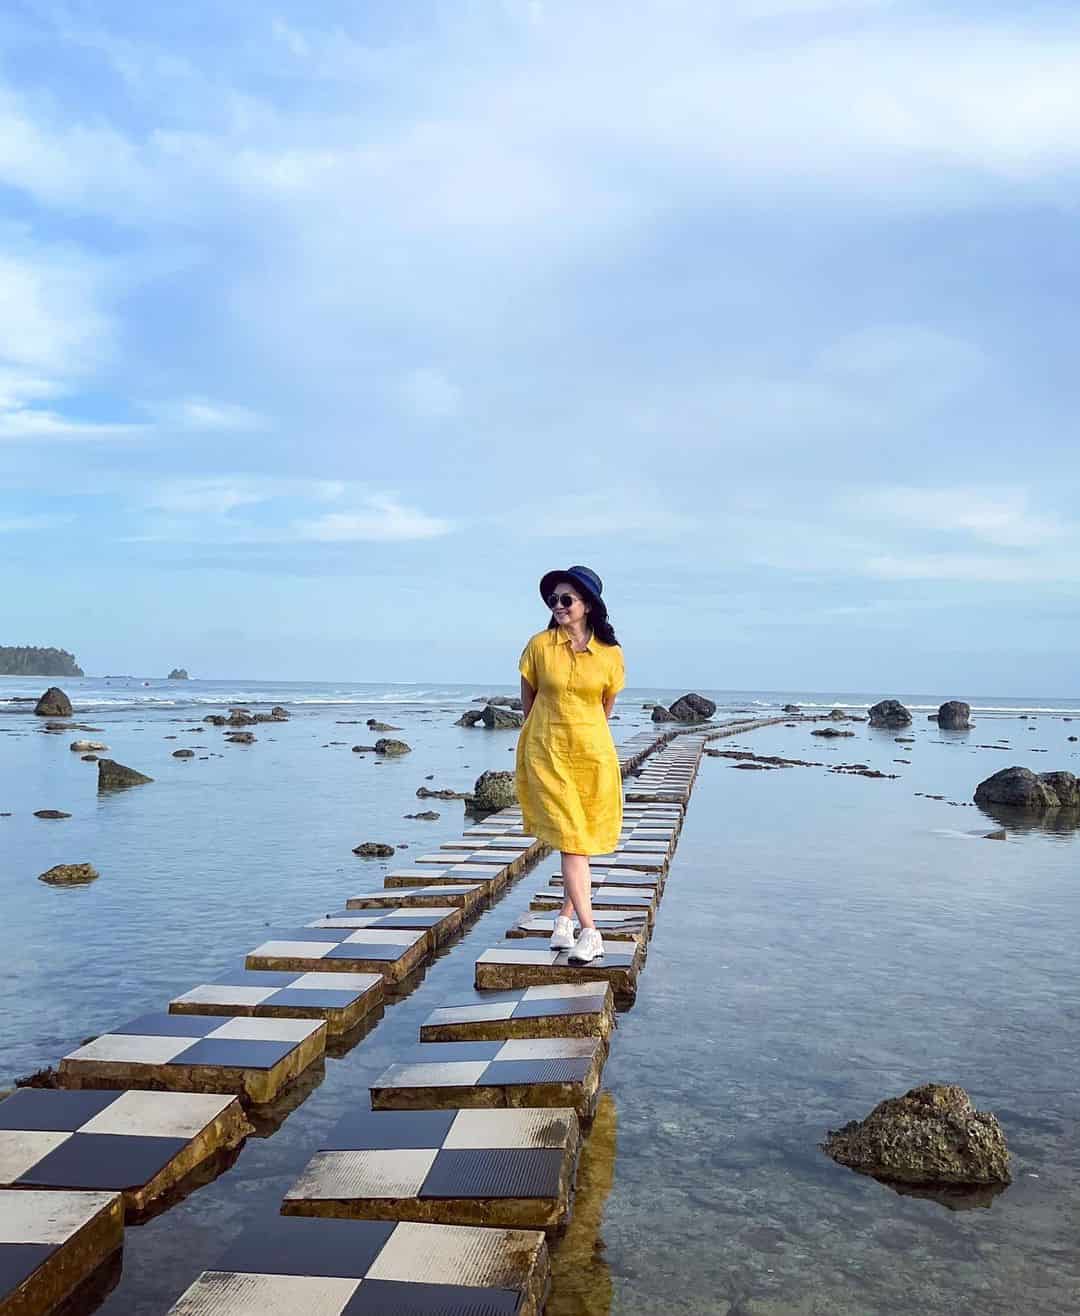 16 Objek Wisata di Pulau Nias, Pesona Bahari Hingga Budaya yang Memikat